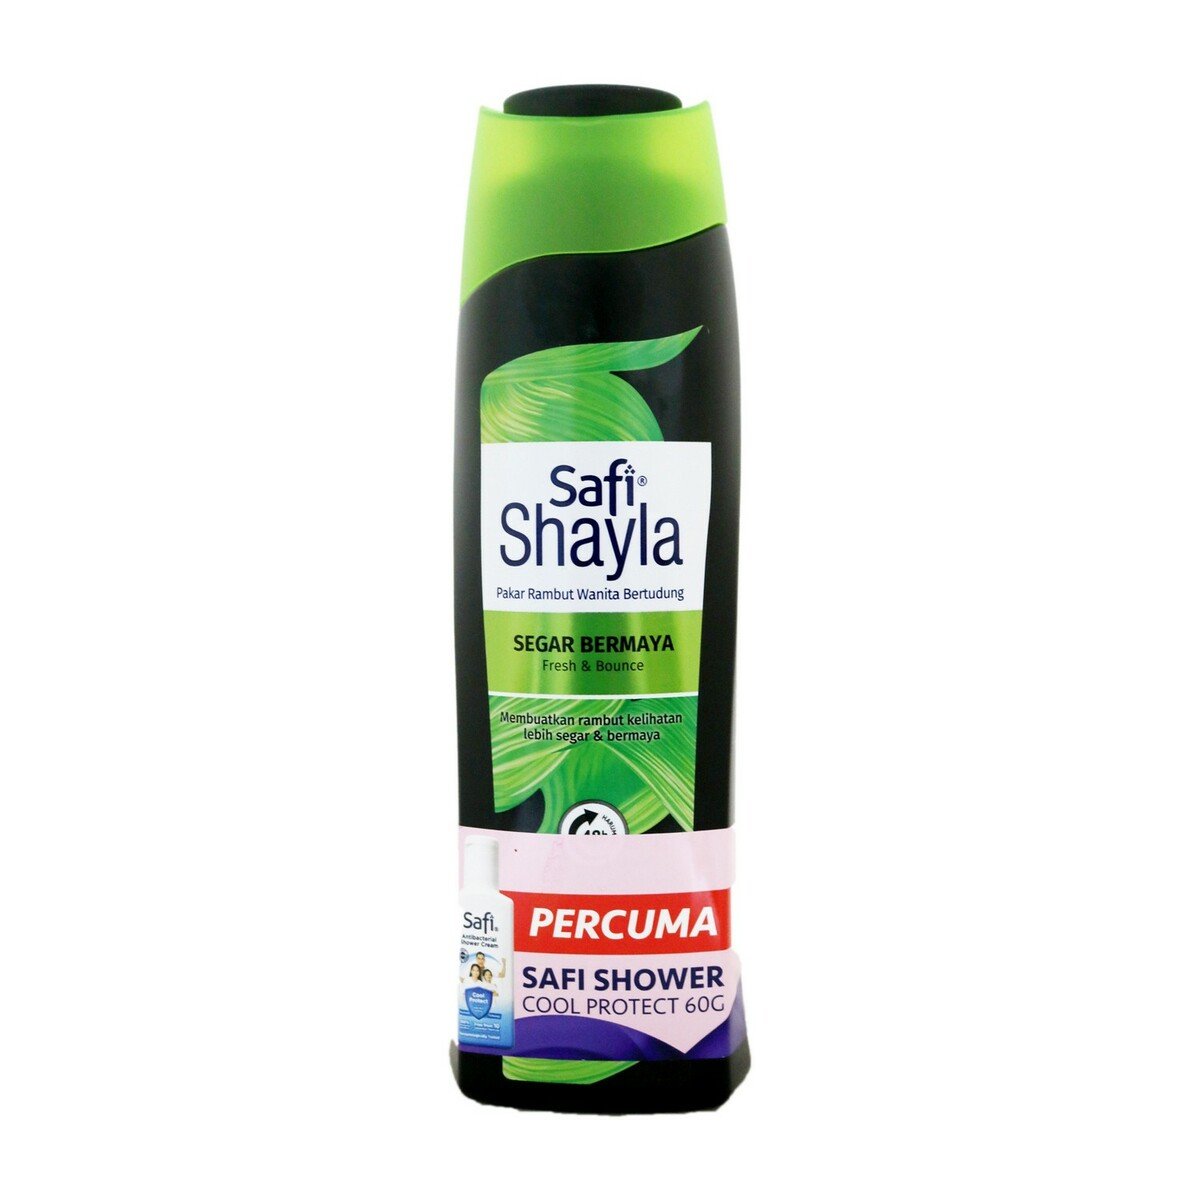 Safi Shayla Fresh Look Shampoo 320g